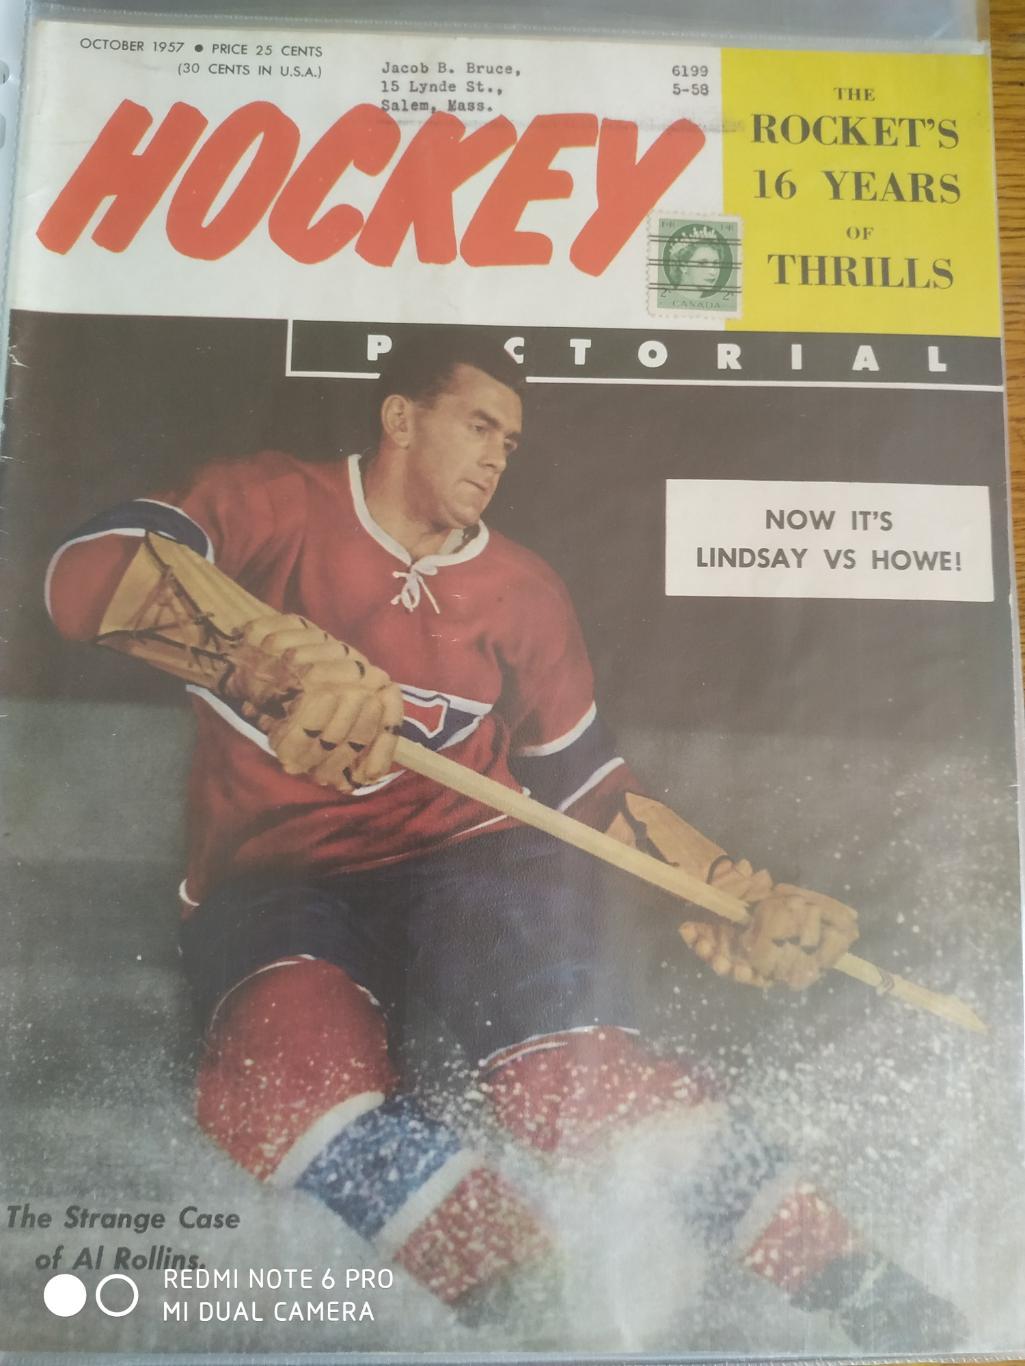 ХОККЕЙ ЖУРНАЛ ЕЖЕМЕСЯЧНИК НХЛ NHL 1957 OCT HOCKEY PICTORIAL